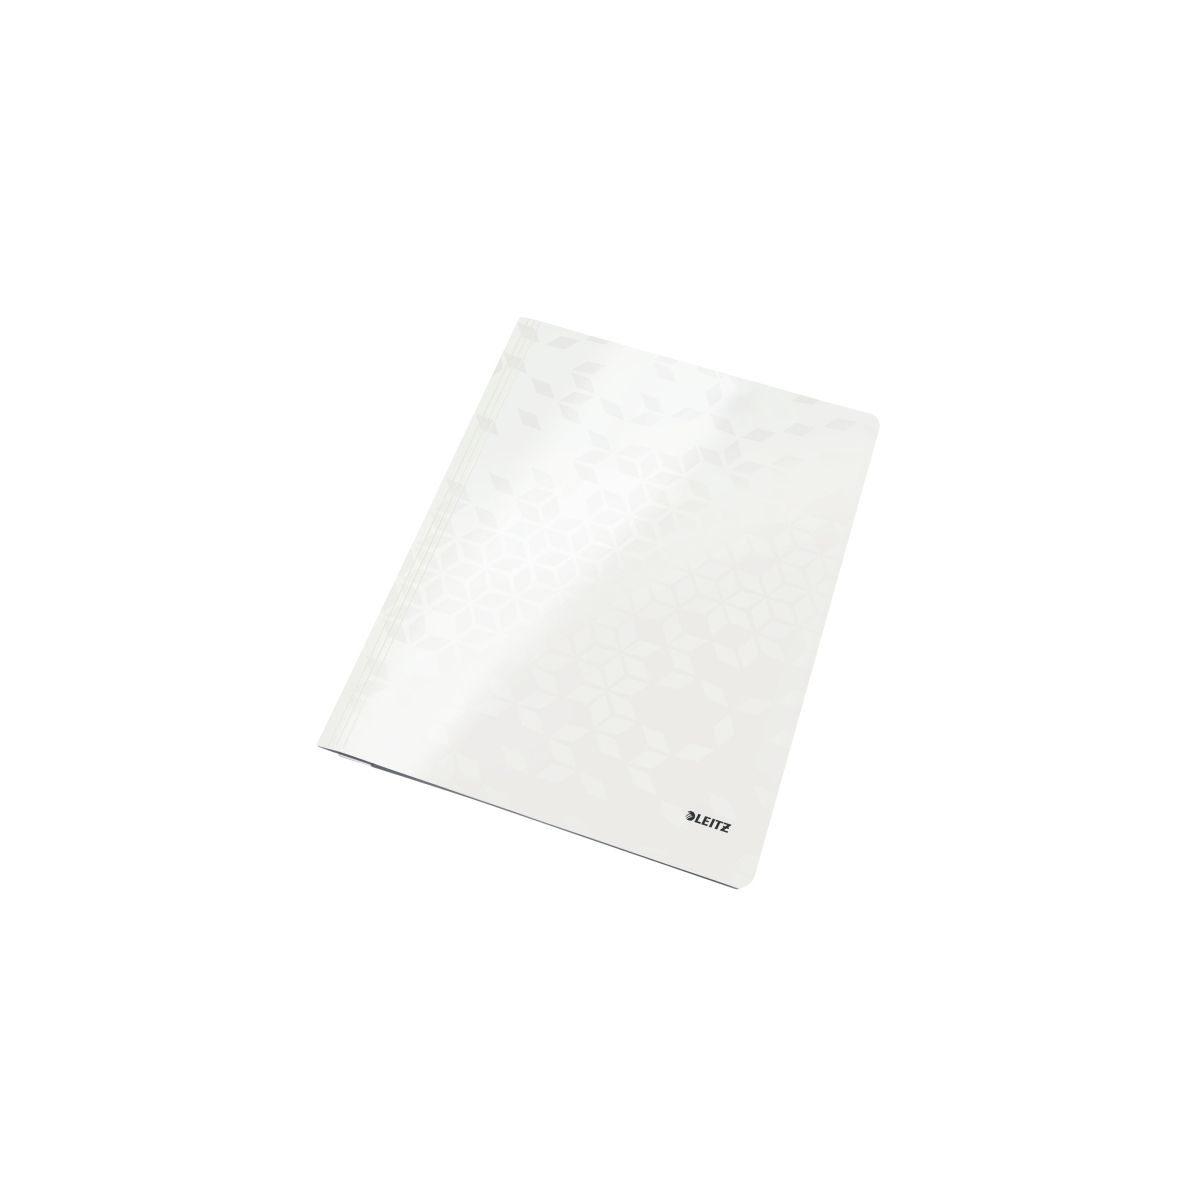 Skoroszyt WOW A4 biały perłowy karton 80g Leitz (30010001)